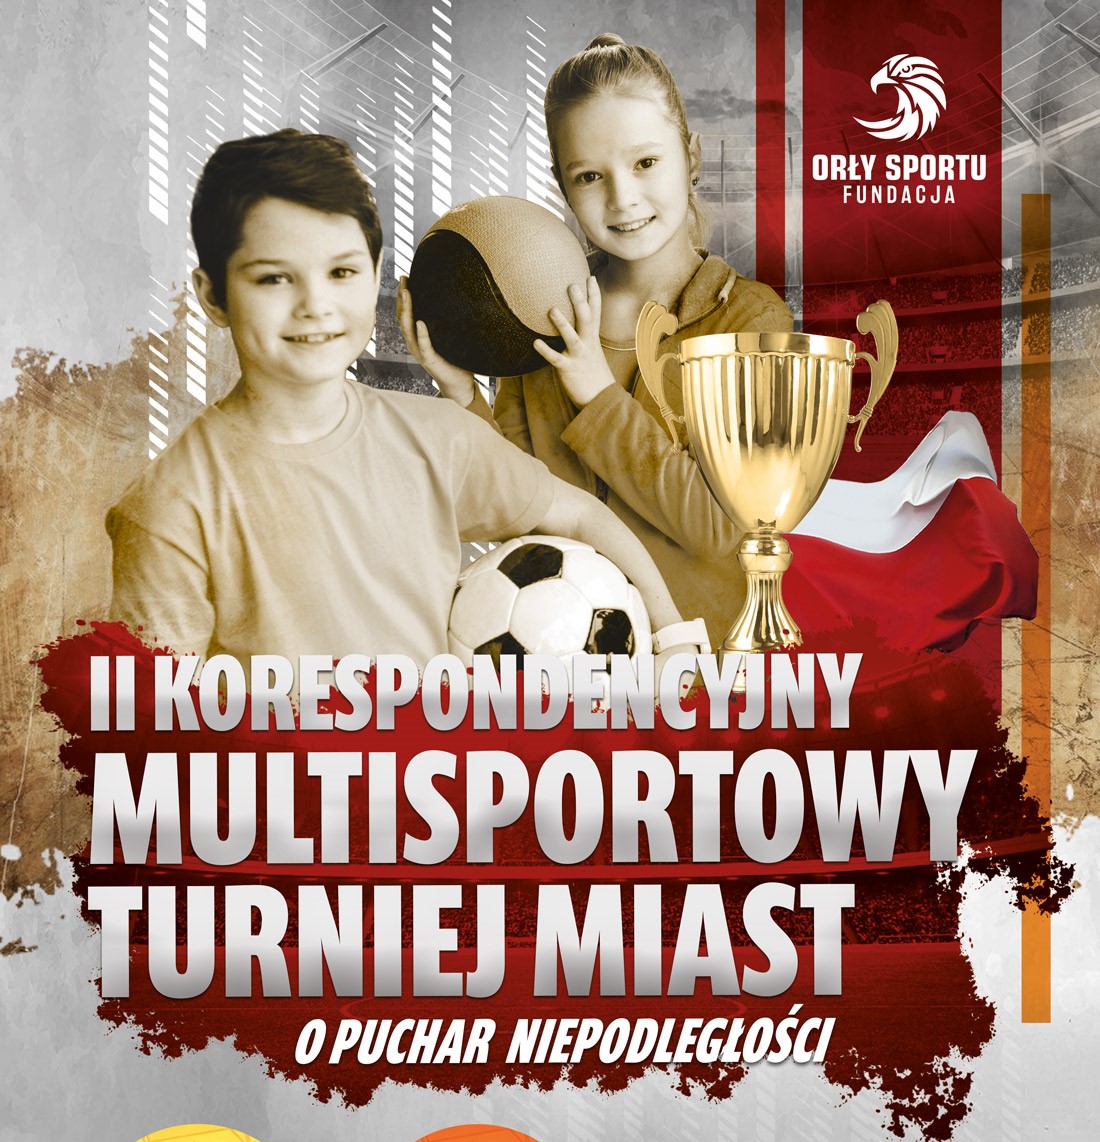 Podsumowanie II Korespondencyjny Multisportowy Turniej Miast o Puchar Niepodległości